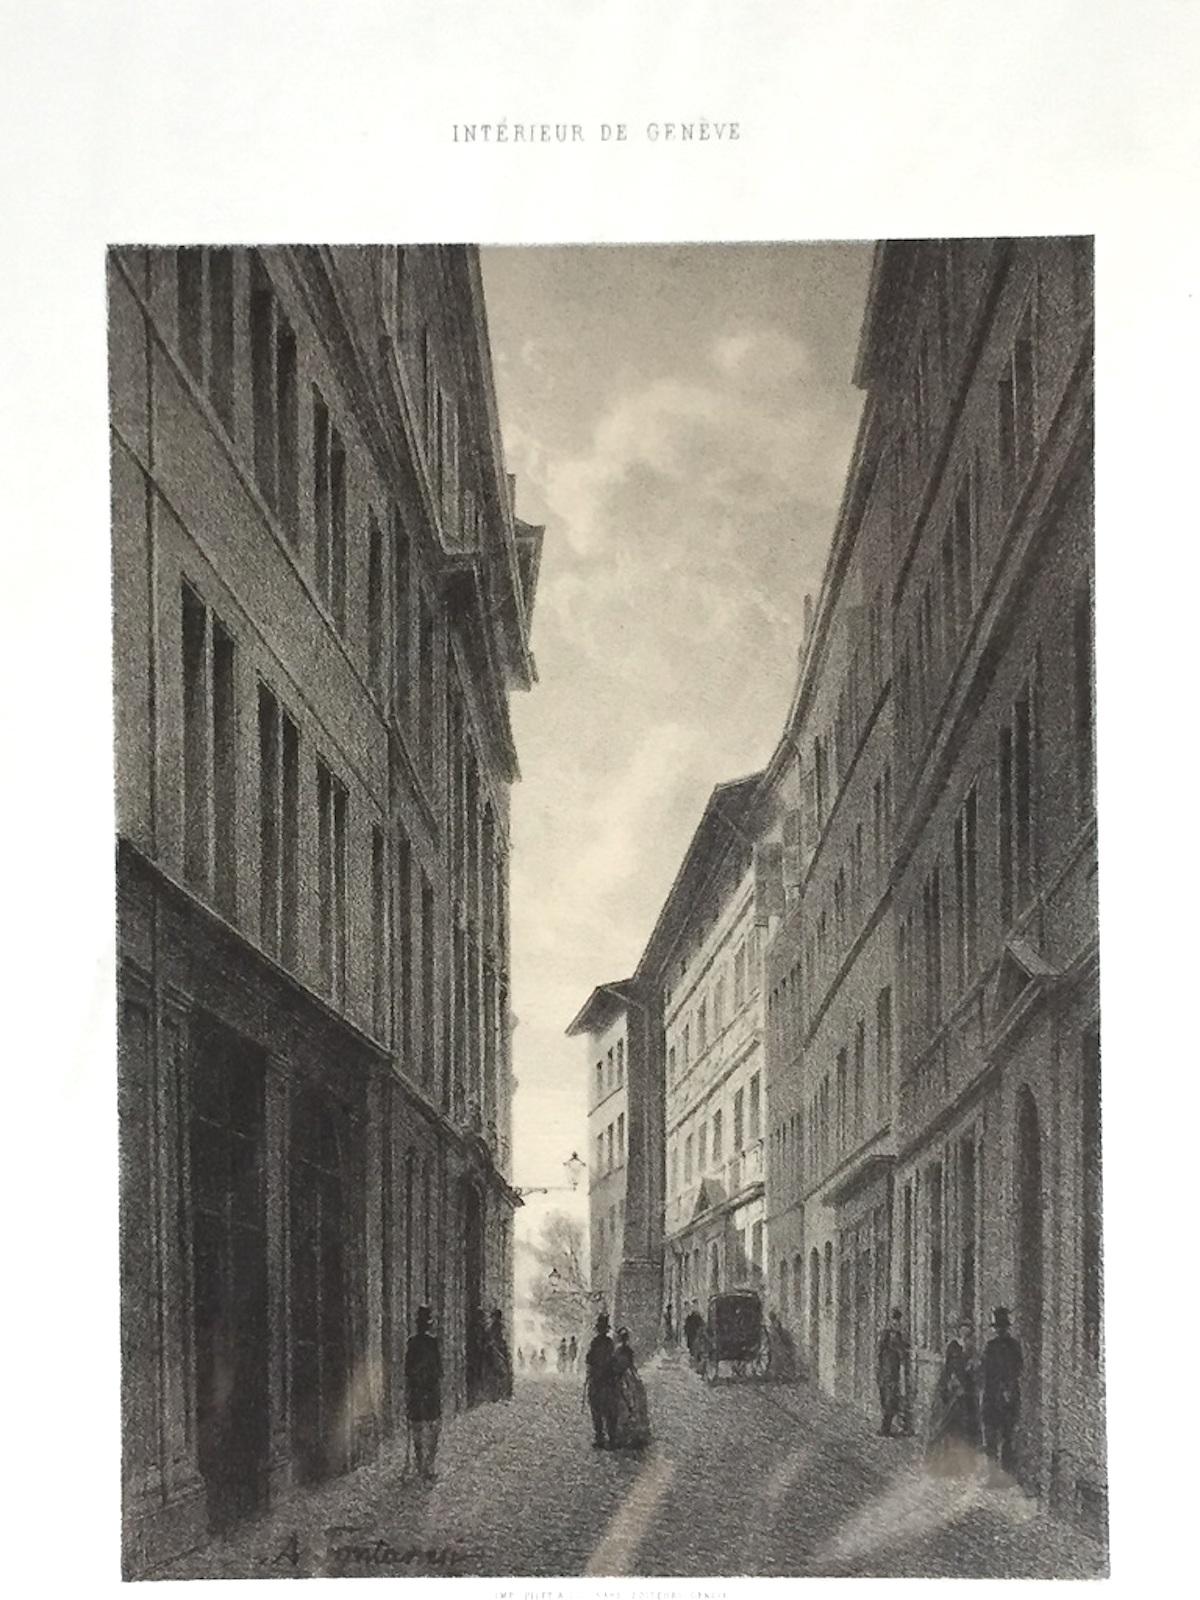 Interieur de Geneve. Rue de l'Hotel de Ville - Lithograph by A. Fontanesi - 1854